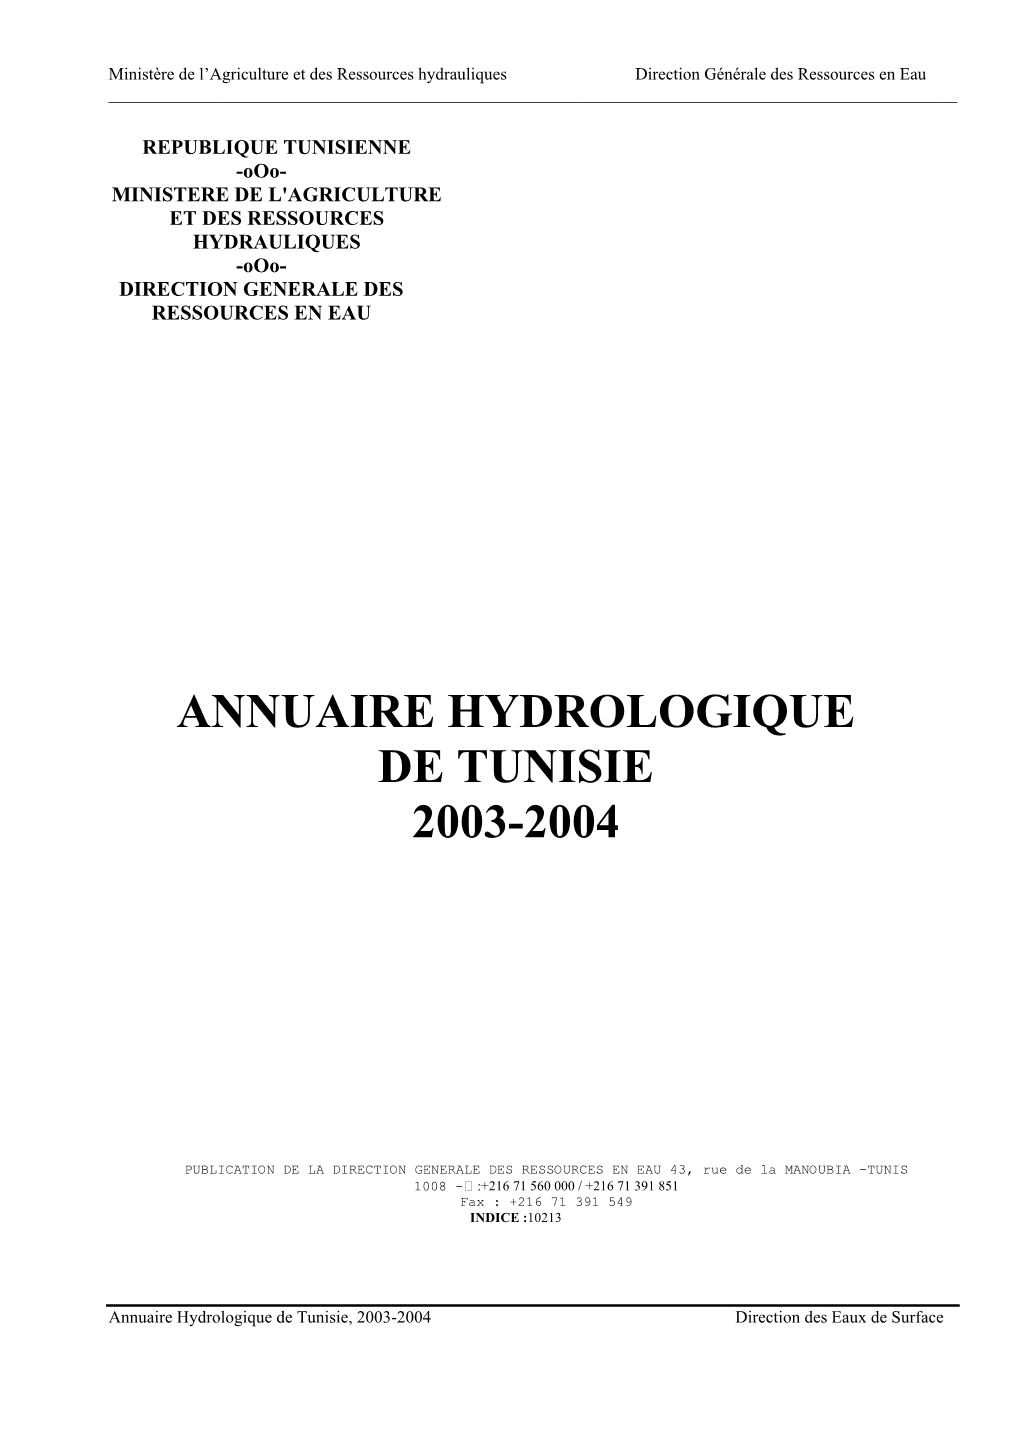 Annuaire Hydrologique De Tunisie 2003-2004